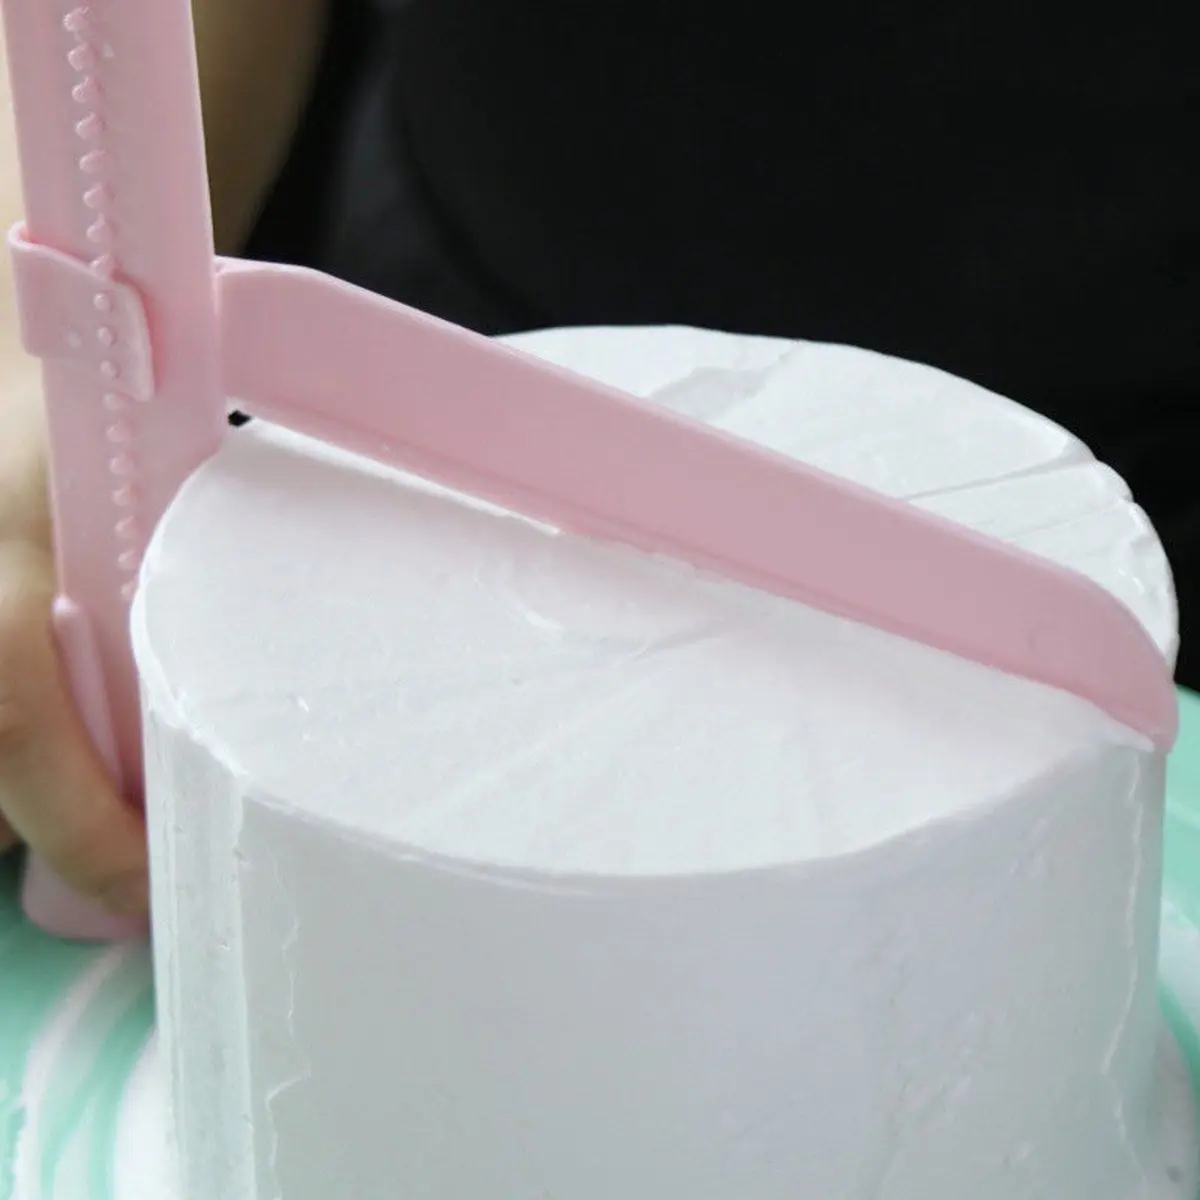 Регулируемый торта-инструменты для резки Fondant(сахарная) сахара глазурь плесень Инструменты для тортов